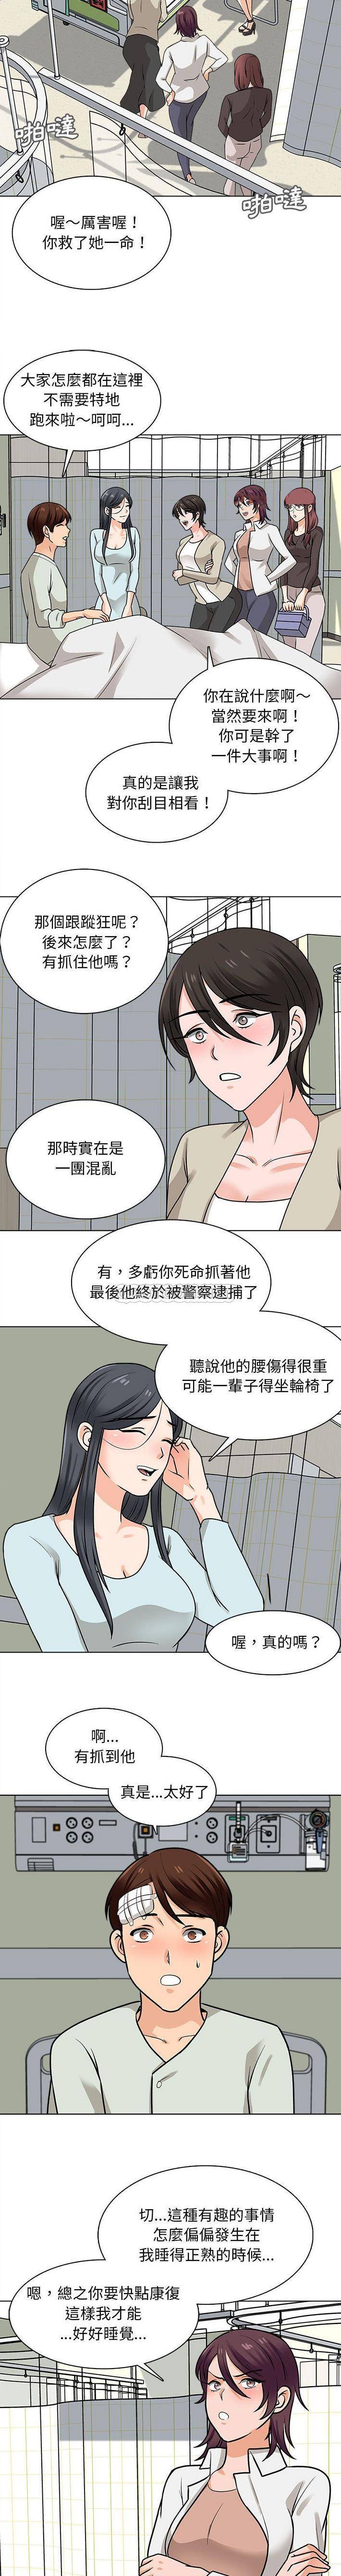 韩国污漫画 幸福公寓 第22话 12